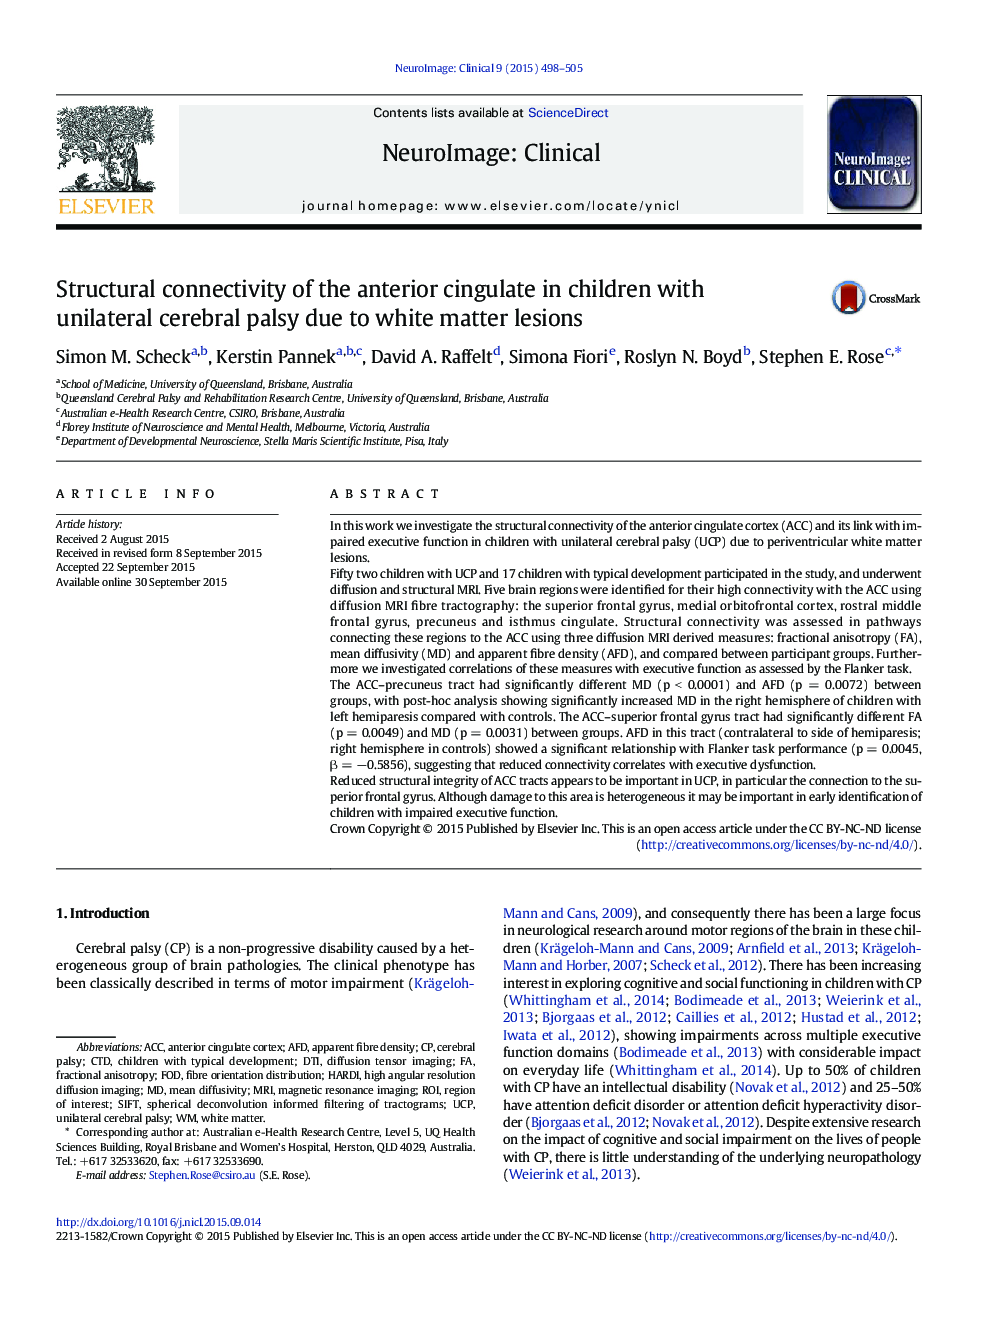 اتصال ساختاری سینگولات قدامی در کودکان مبتلا به فلج مغزی یک جانبه به علت ضایعات ماده سفید 